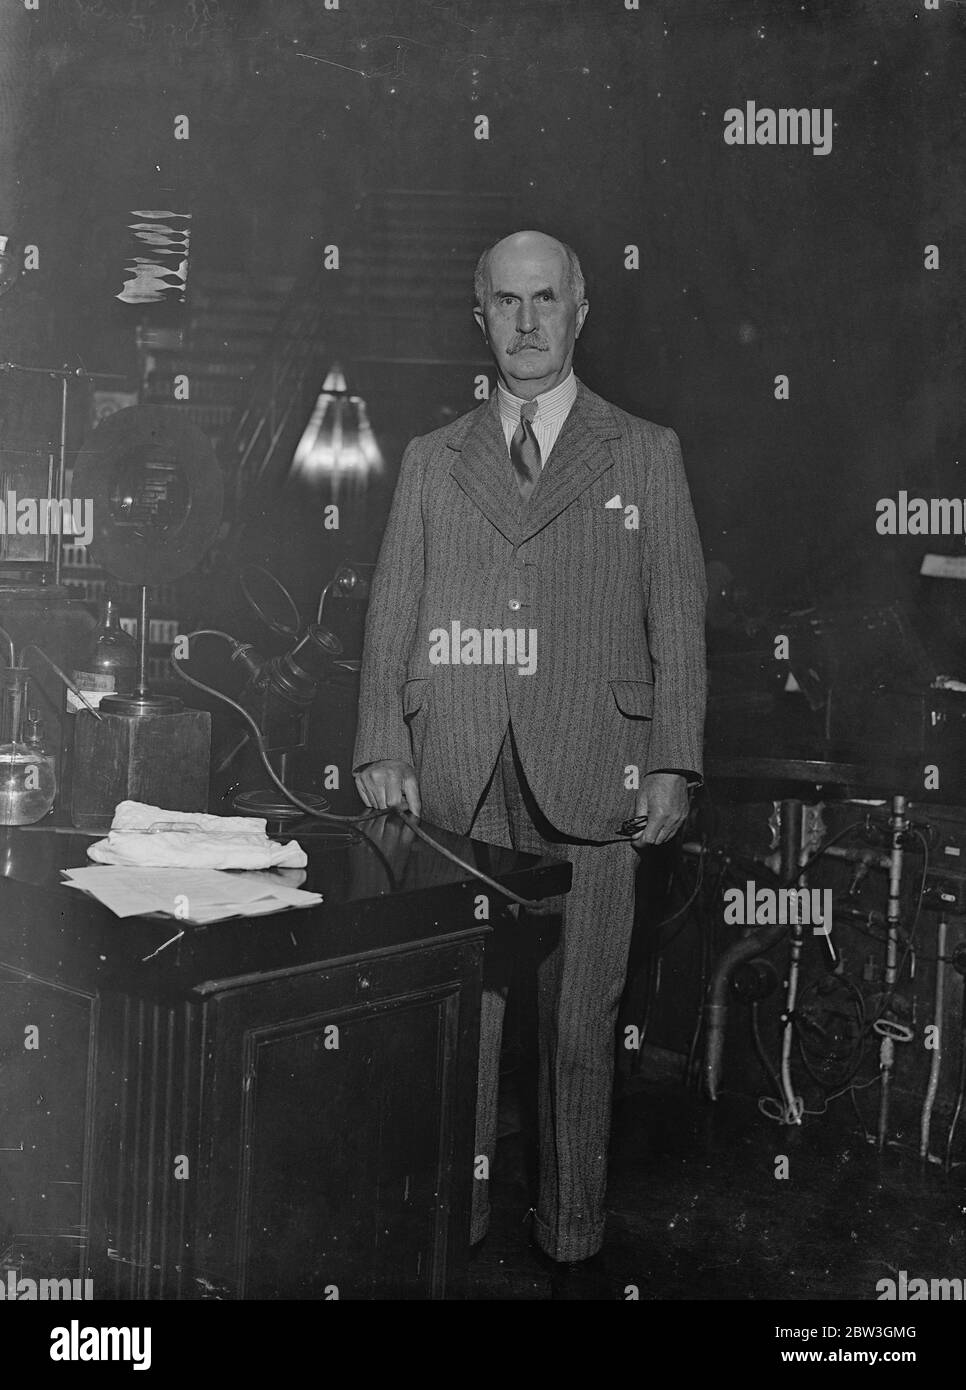 Sir William Bragg zum Präsidenten der Royal Society - Nobelpreisträger gewählt. Sir William Bragg in der Lecture Hall an der Royal Institution, Piccadilly, London. 19. November 1935 Stockfoto